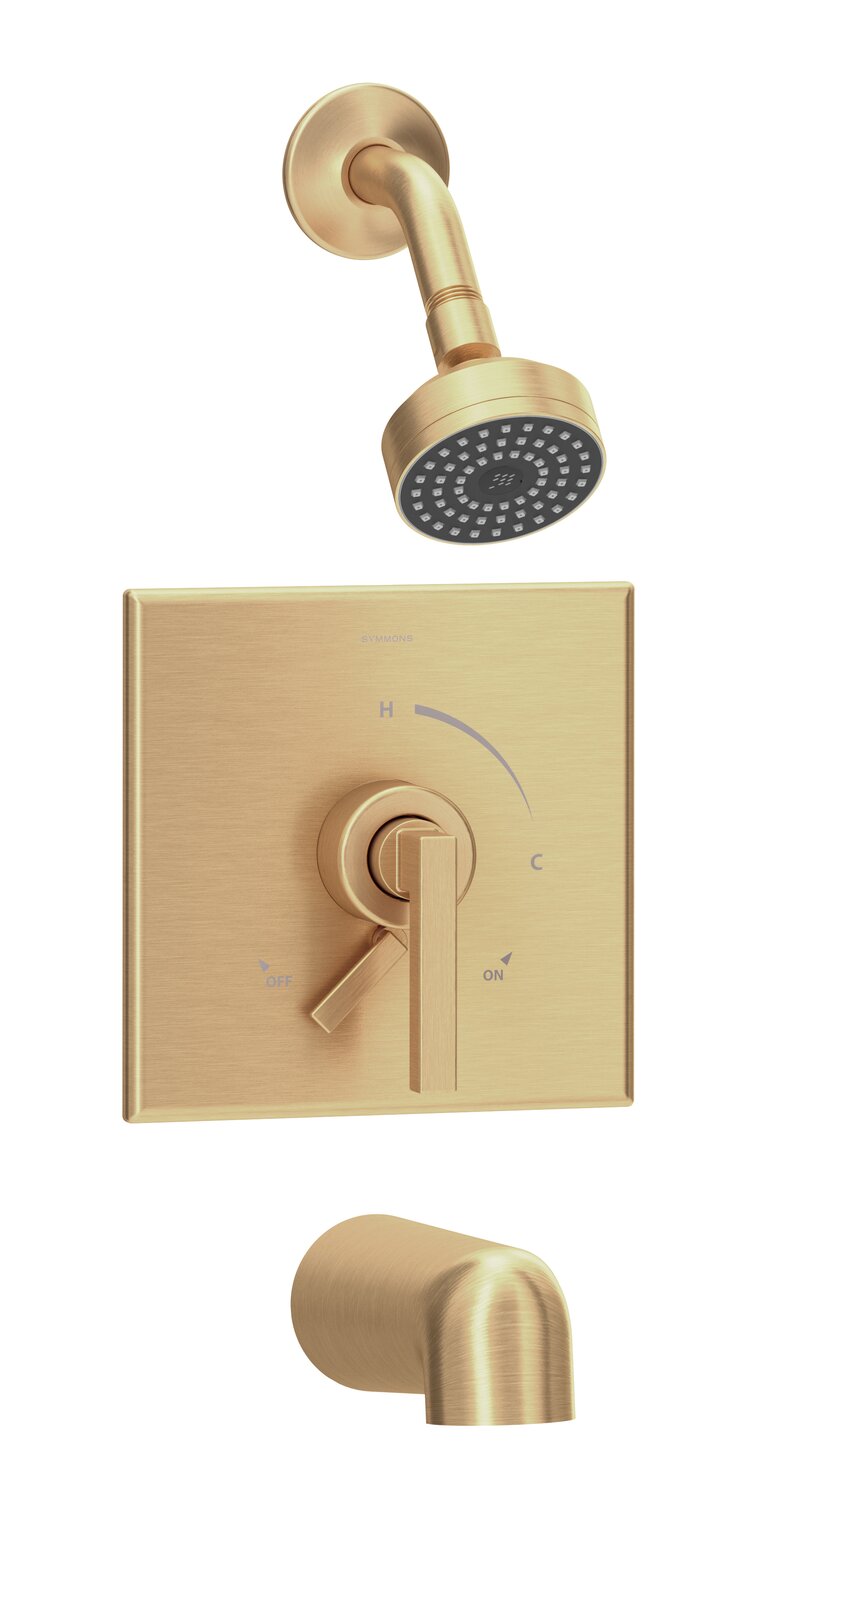 حوض استحمام كامل بنظام الدش وحنفية دش مثبتة على الحائط من Aquacubic باللون الذهبي المصقول